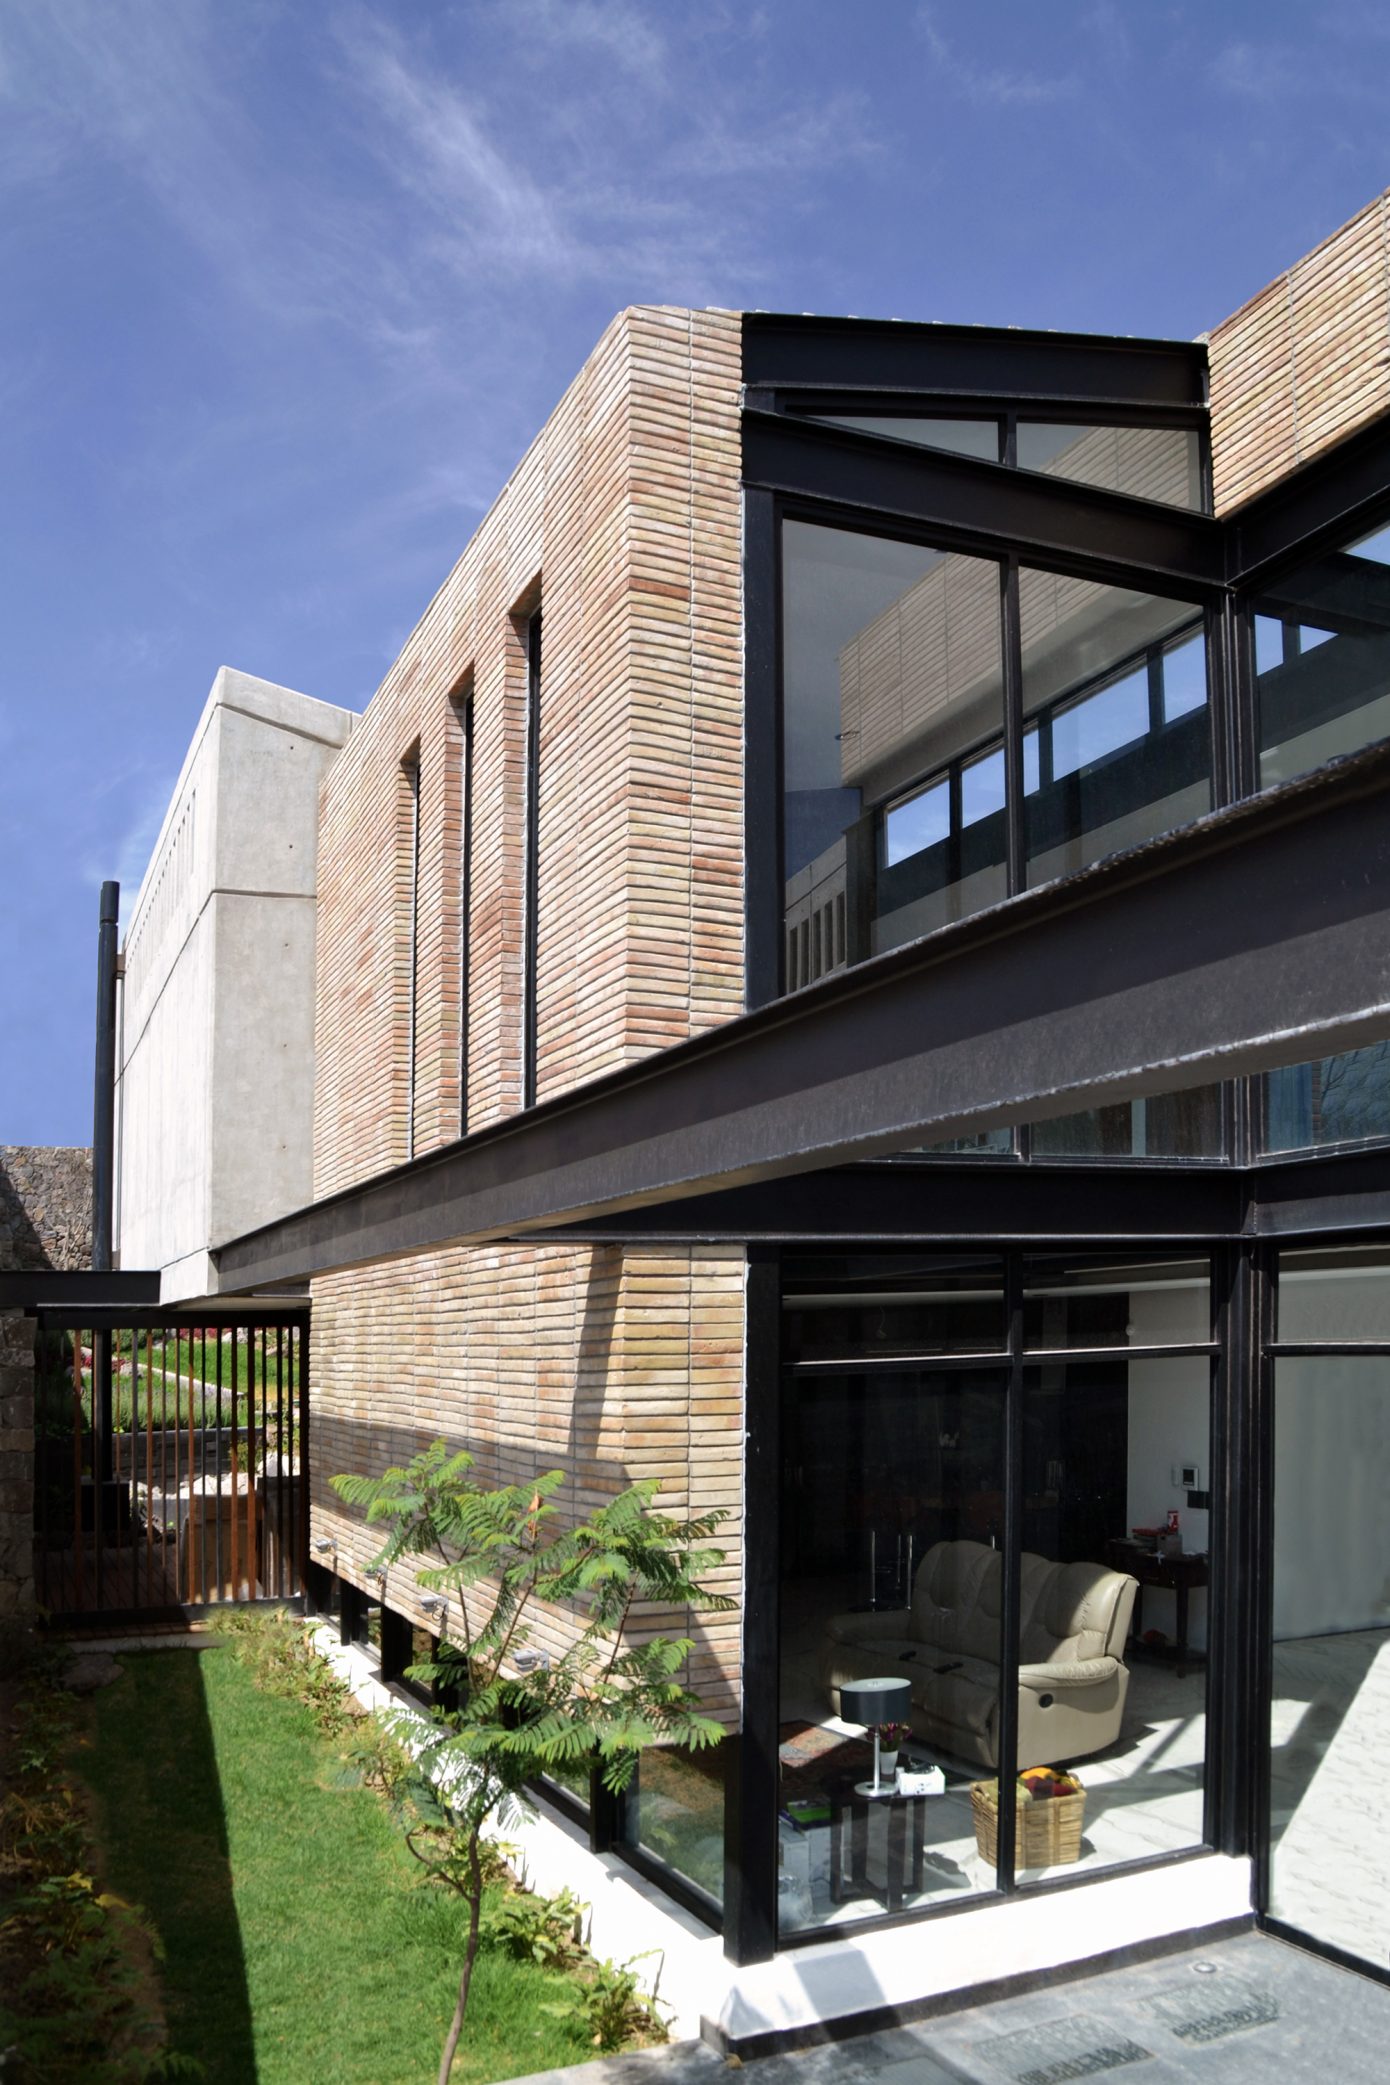 Casa AB by e|arquitectos